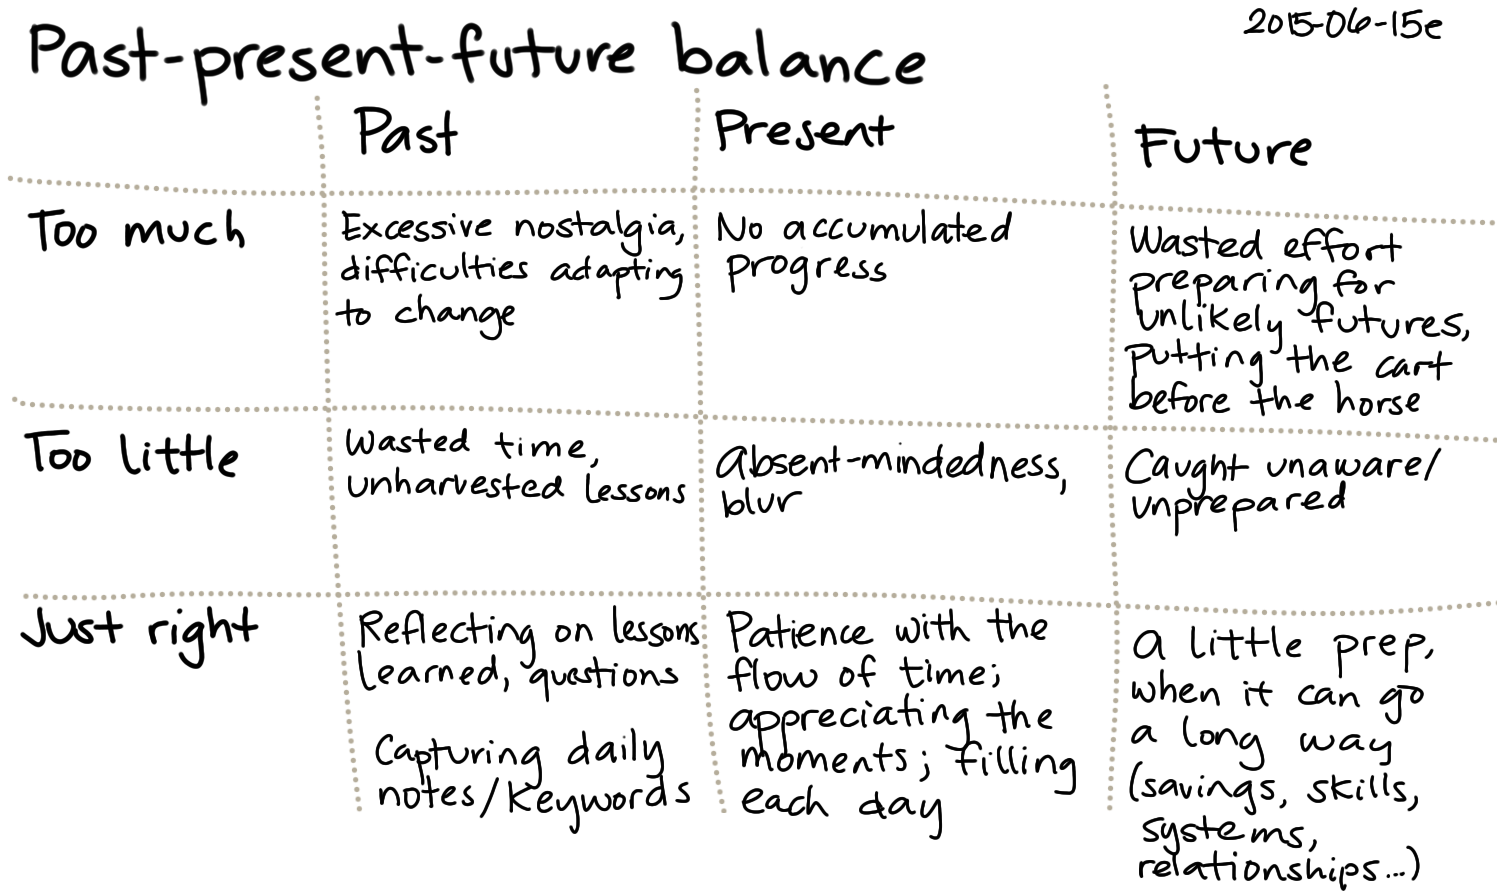 2015-06-15e Past-present-future balance -- index card #balance.png